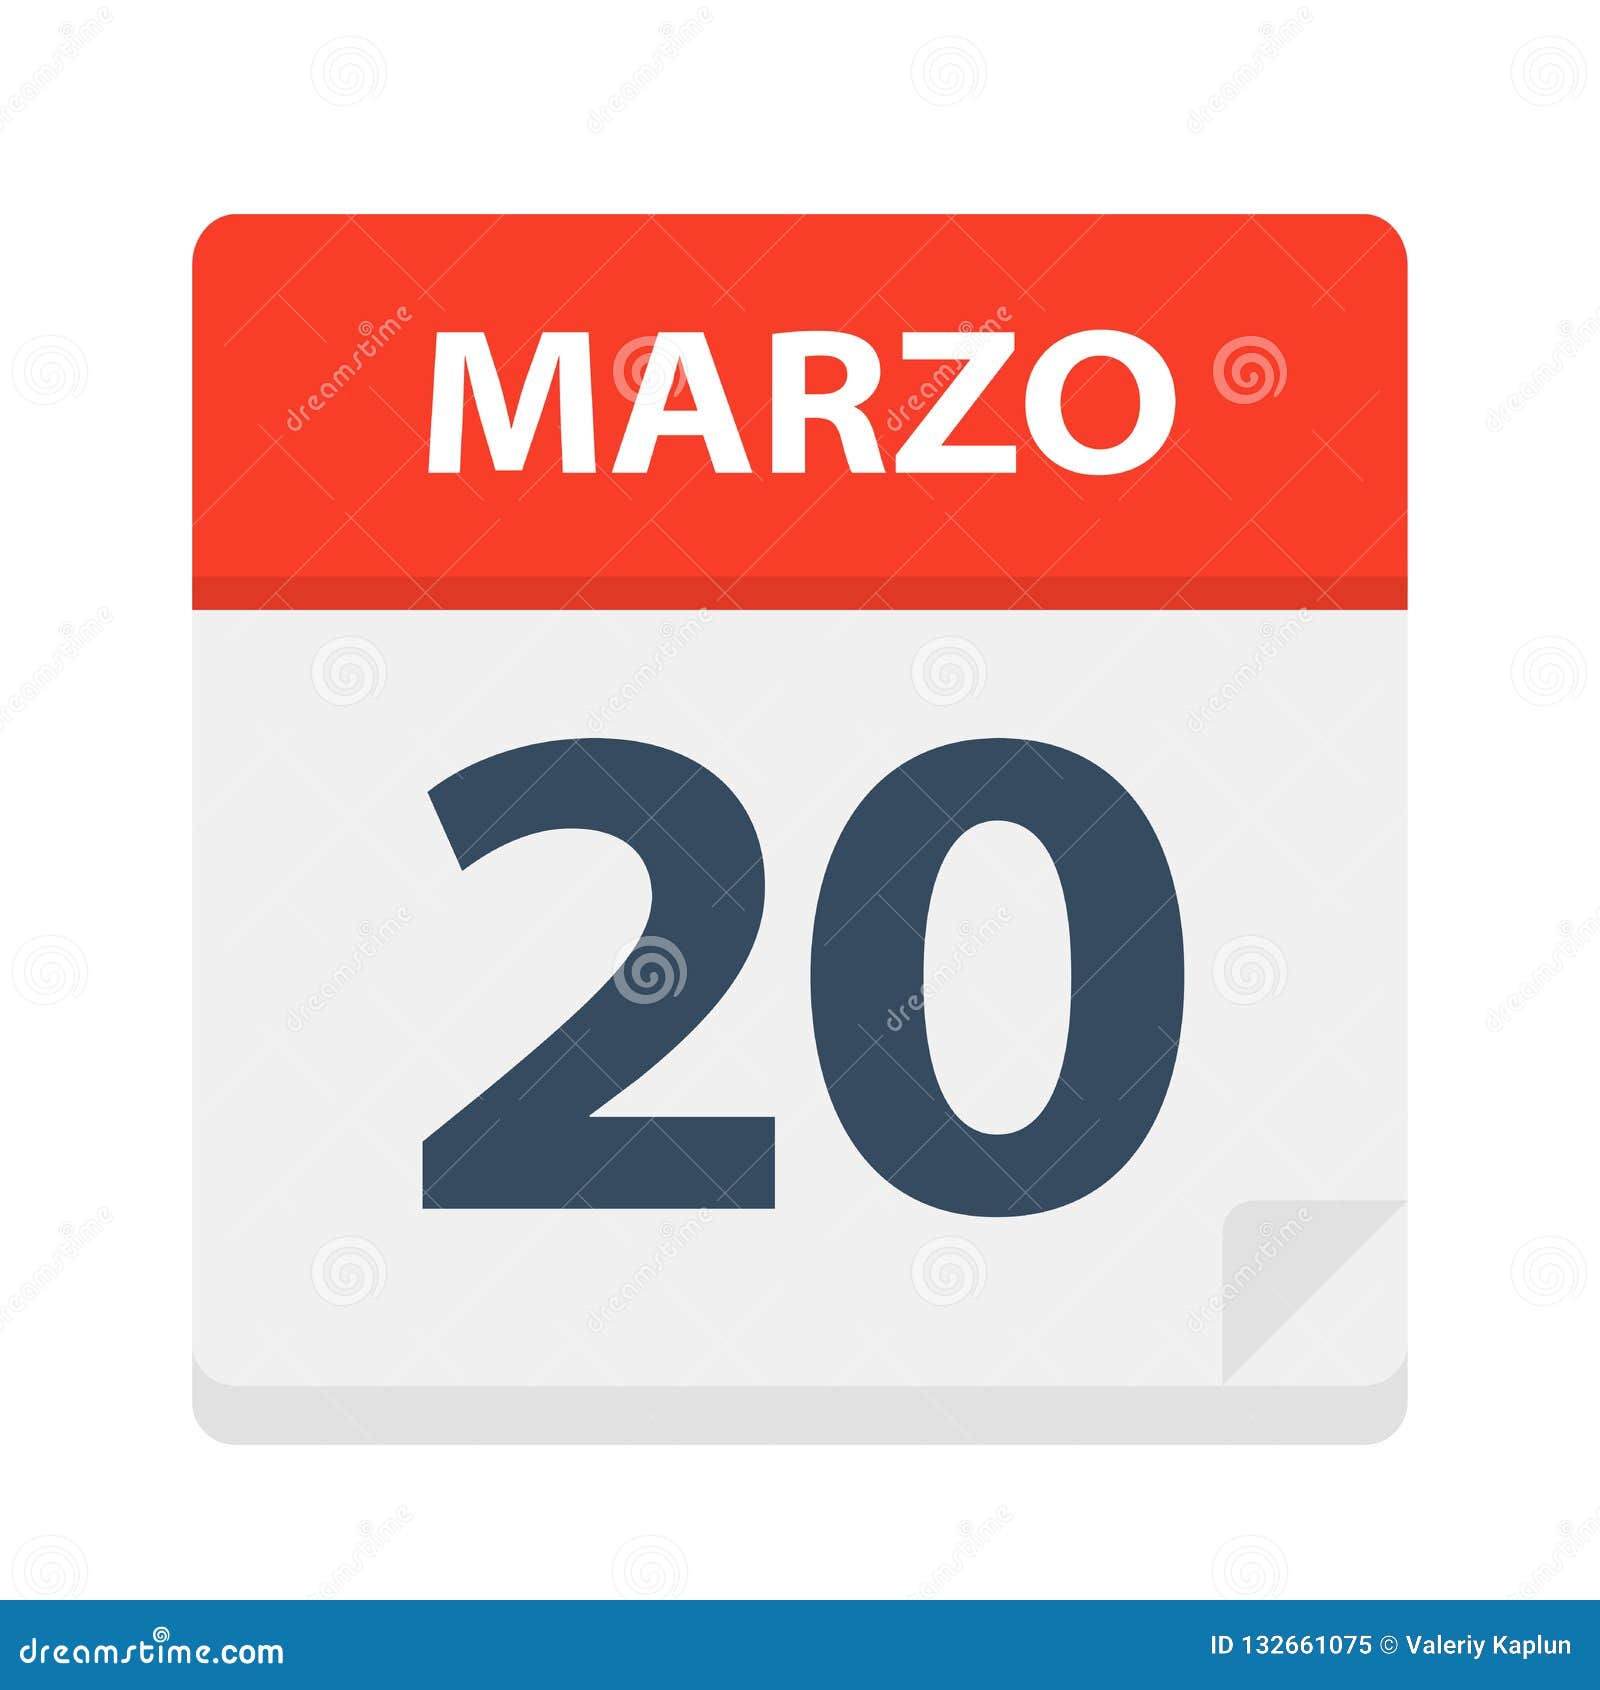 marzo 20 - calendar icon - march 20.   of spanish calendar leaf